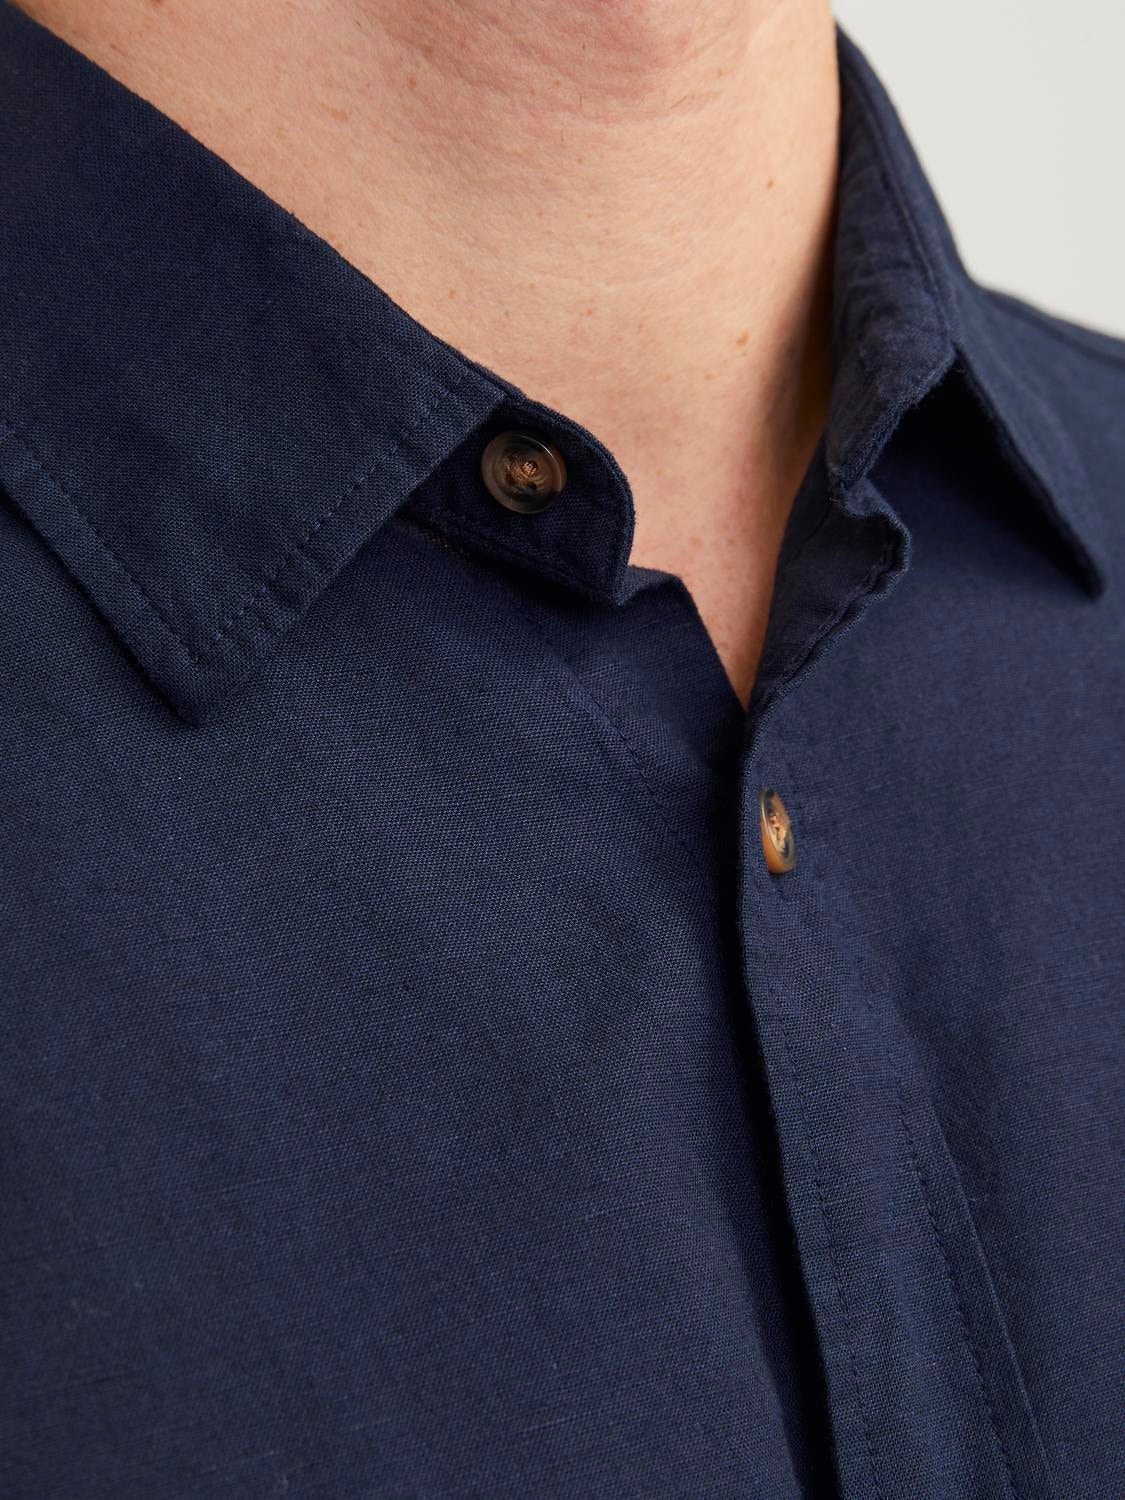 Jack & Jones Comfort Fit Shirt -Navy Blazer - 12248383